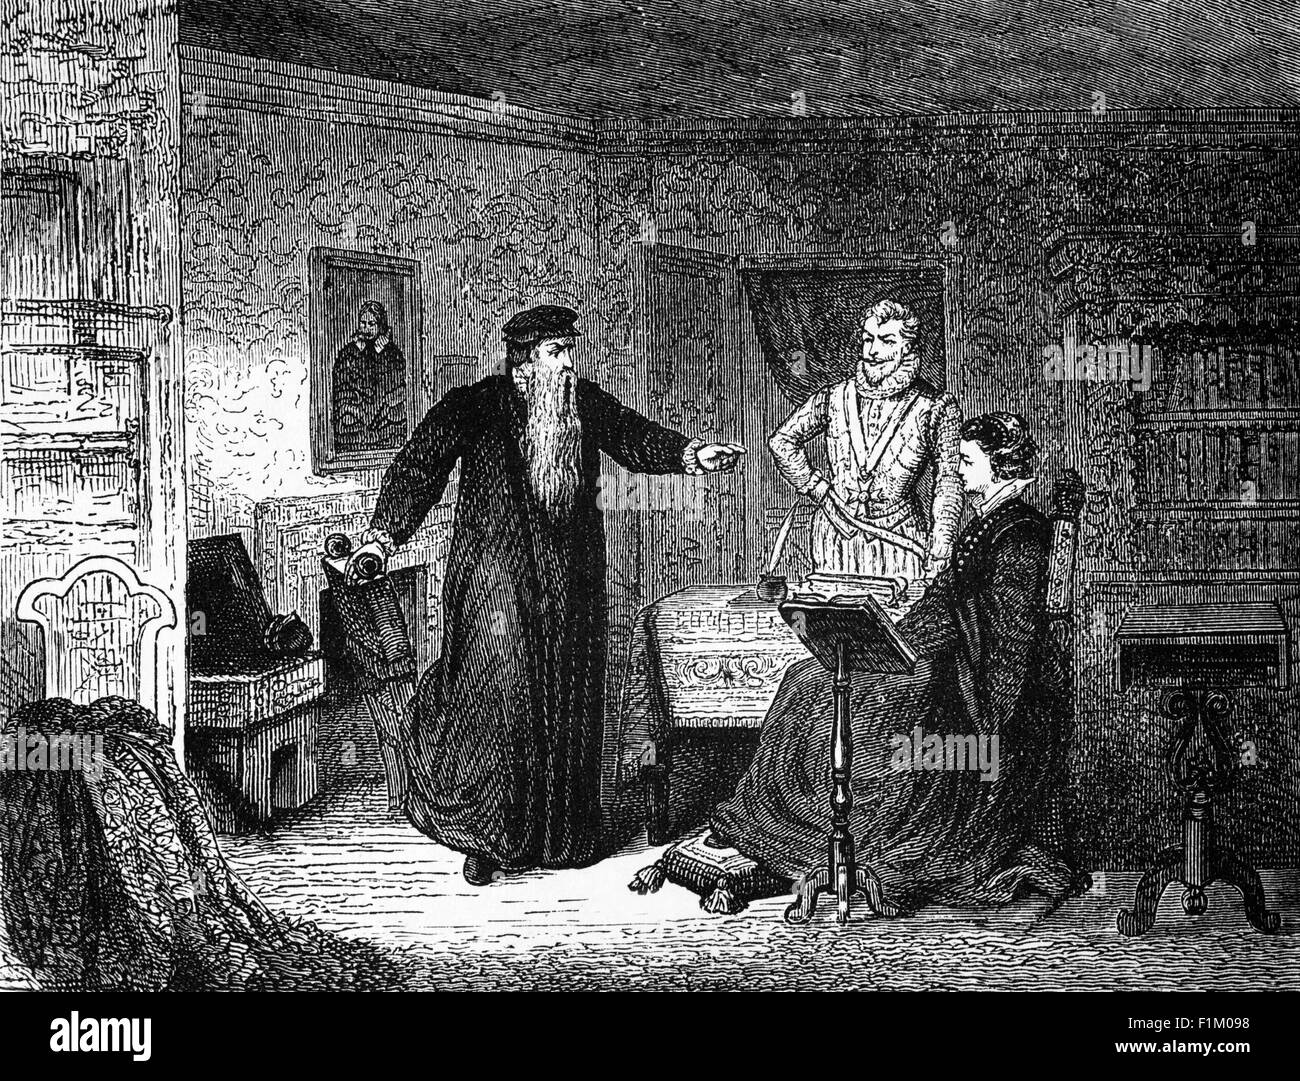 En 1561, la Reina María llegó a Escocia y asistió a la Misa en la capilla real del Palacio Holyrood. El domingo siguiente, John Knox protestó desde el púlpito de San Giles. Como resultado, apenas dos semanas después de su regreso, Mary convocó a Knox y lo acusó de incitar a una rebelión contra su madre y de escribir un libro contra su propia autoridad. KNOX respondió que mientras sus sujetos encontraran que su regla era conveniente, estaba dispuesto a aceptar su gobierno. Cuando María le preguntó si los súbditos tenían derecho a resistir a su gobernante, él respondió que si los monarcas excedían sus límites legales, podrían ser r Foto de stock